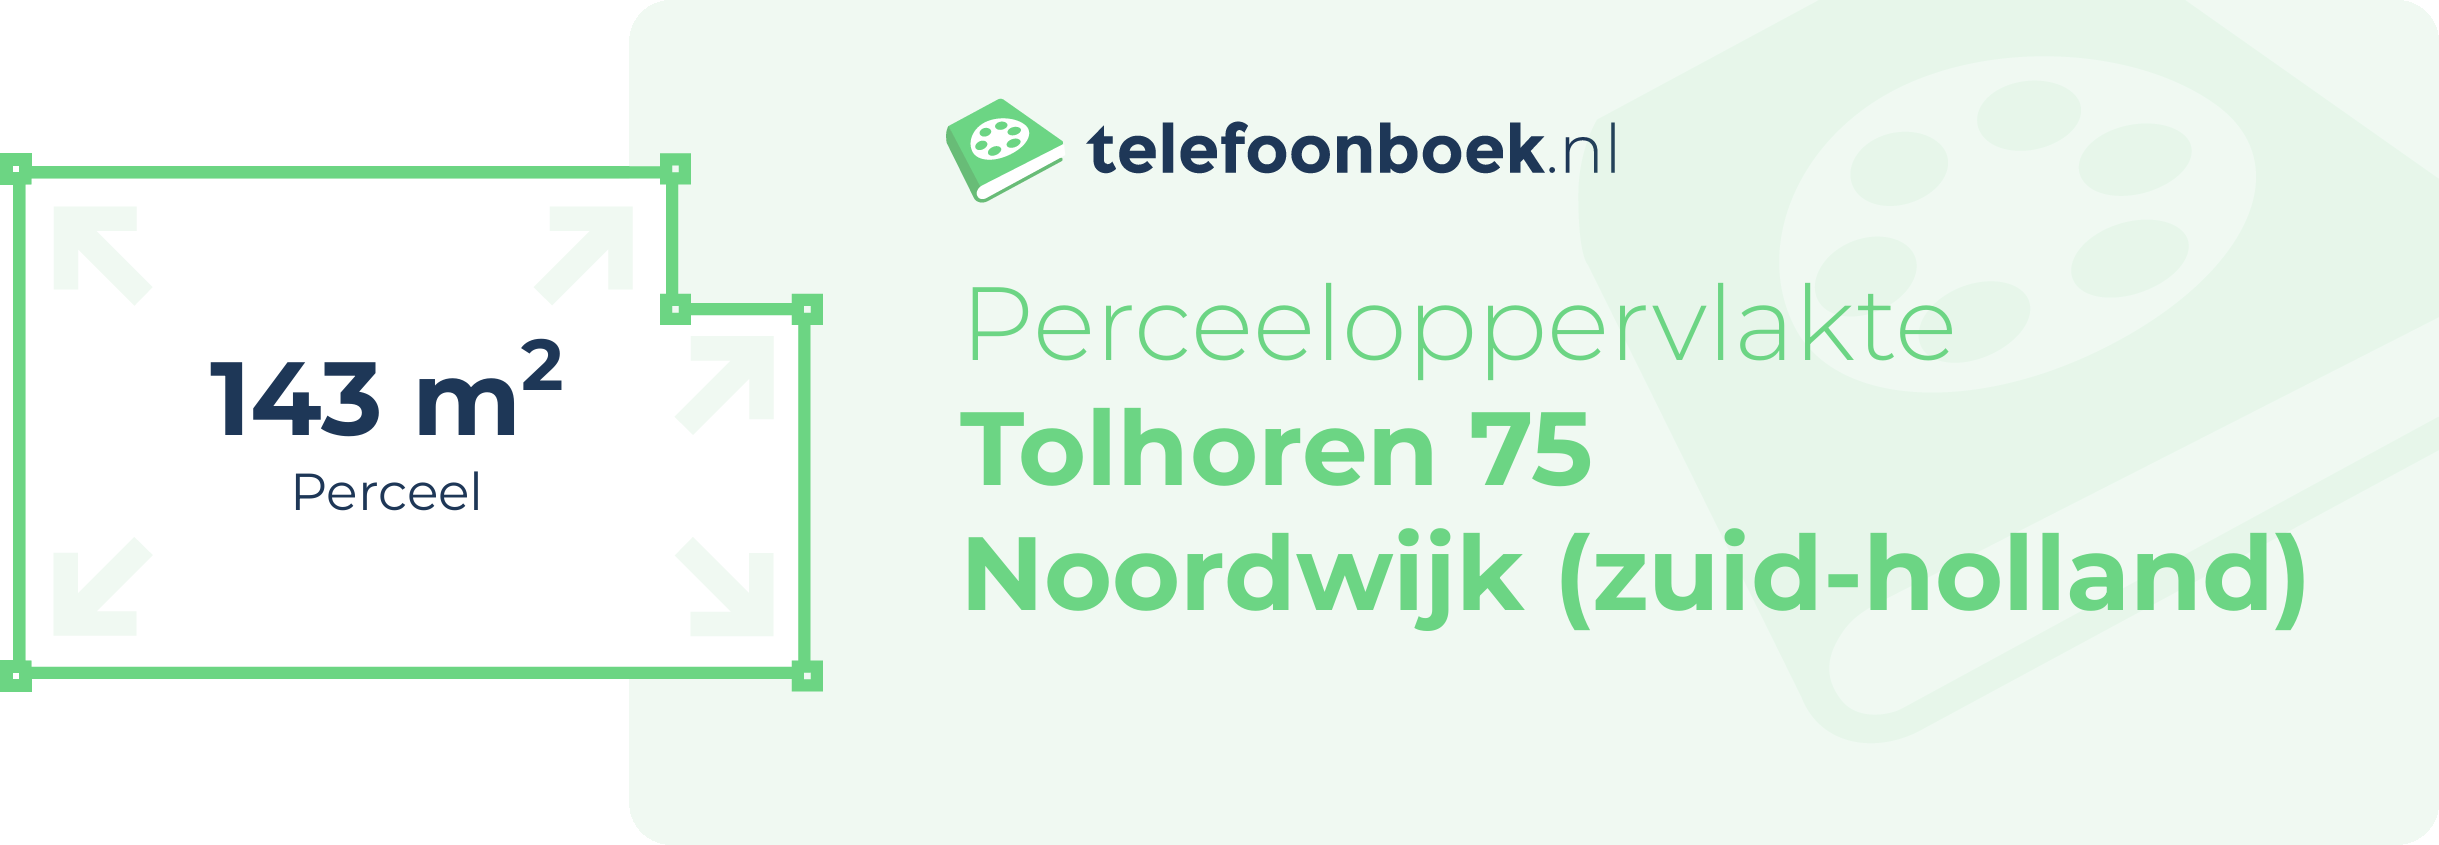 Perceeloppervlakte Tolhoren 75 Noordwijk (Zuid-Holland)